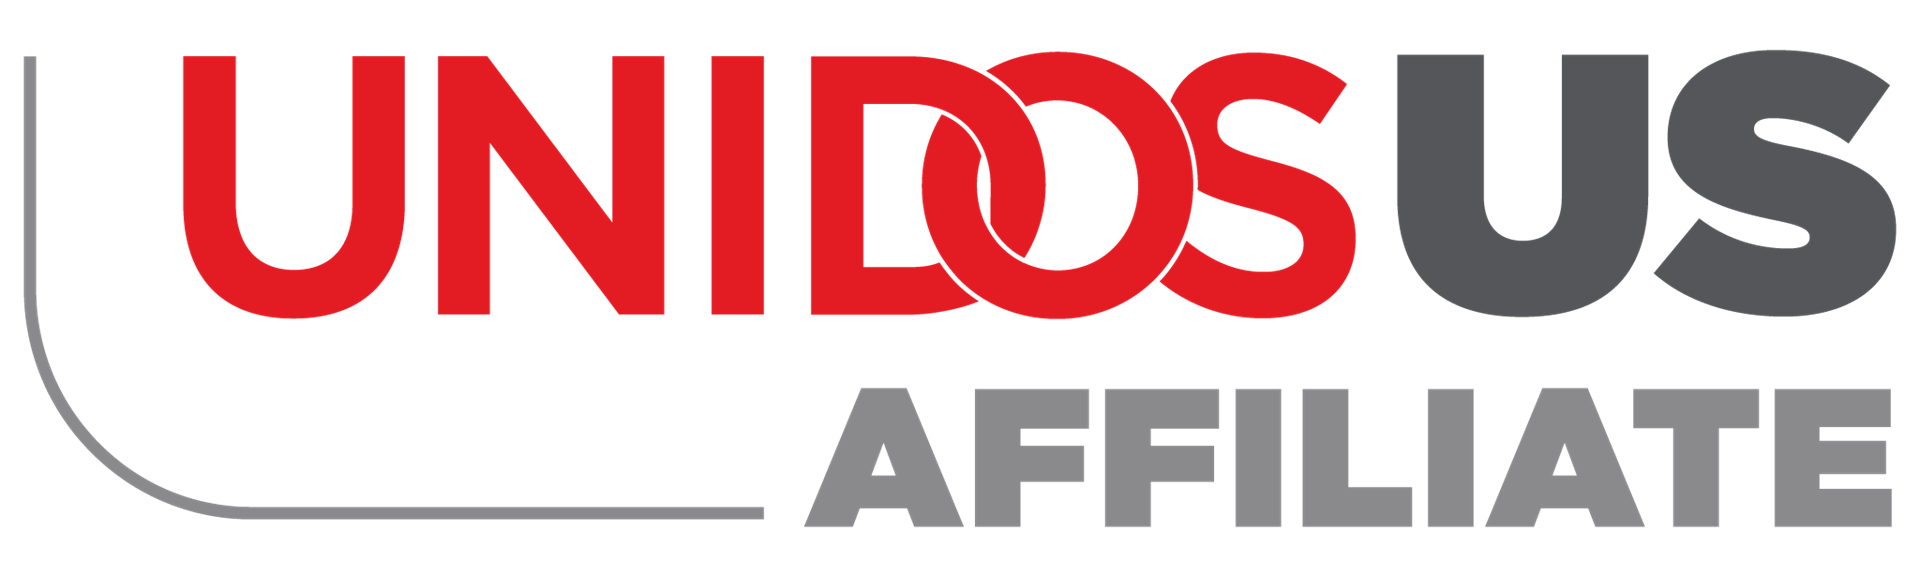 unidosus-affiliate-logo